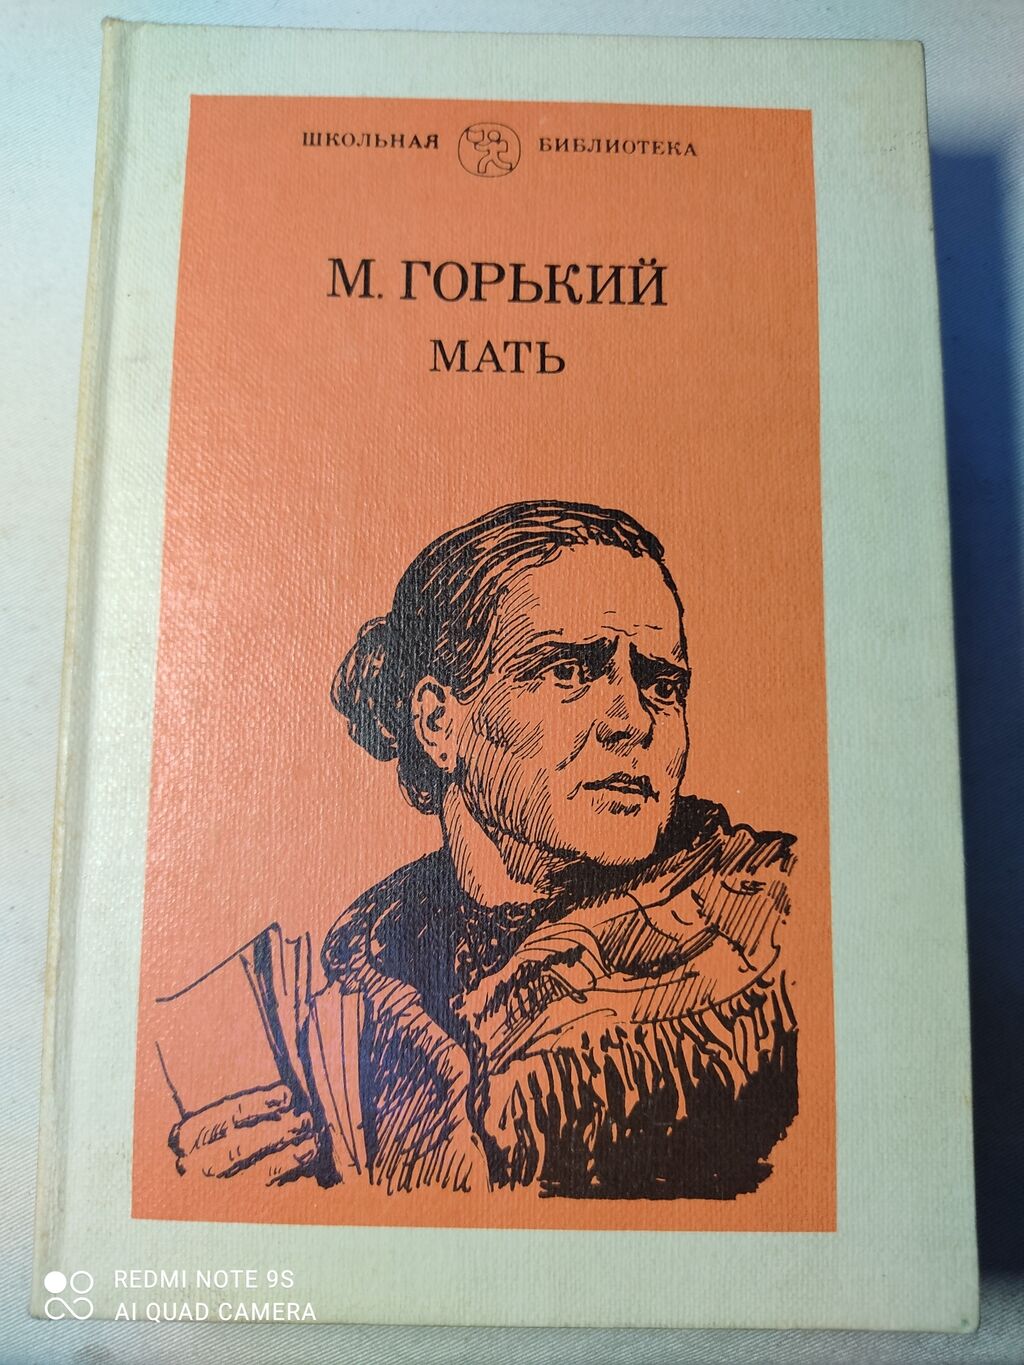 Трилогия писателя горького. Обложка книги Горький, м. мать.